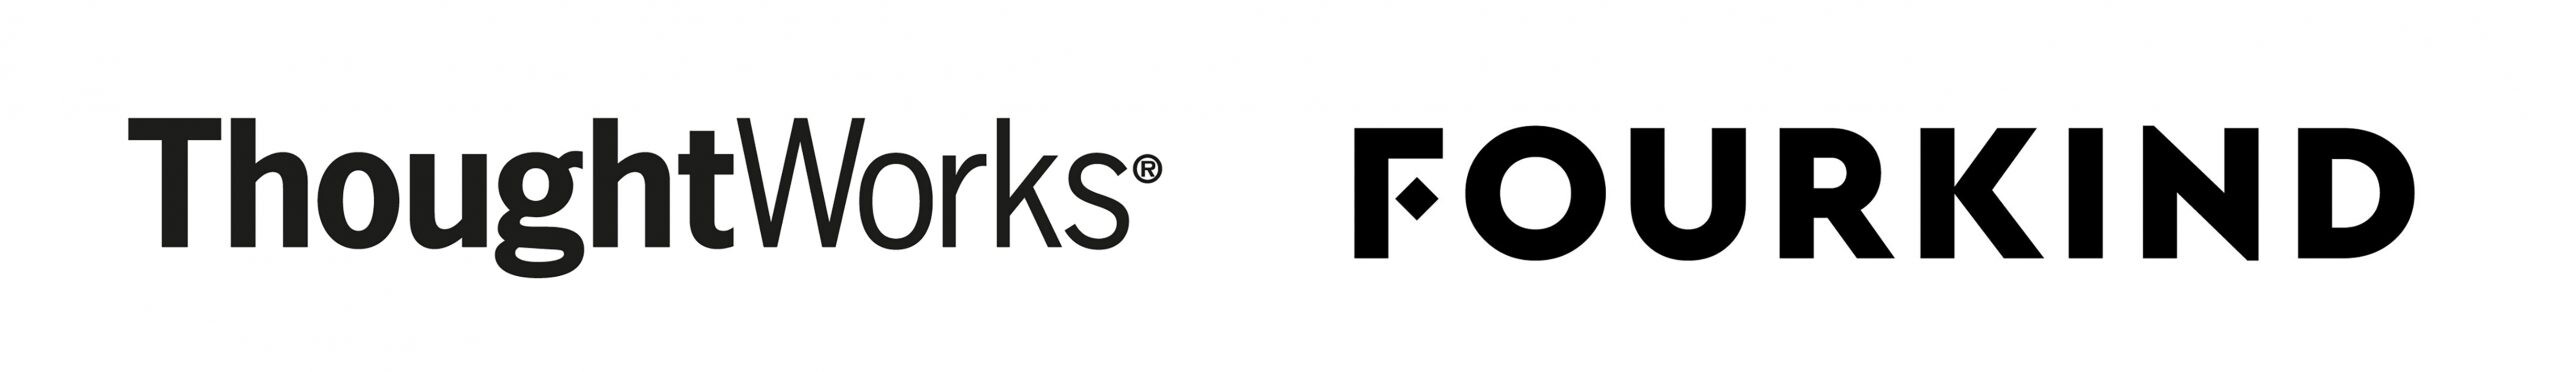 ThoughtWorks ประกาศควบรวม Fourkind บริษัทที่ปรึกษาชั้นแนวหน้าของฟินแลนด์ เสริมความแข็งแกร่งทั้งประสิทธิภาพและบริการ